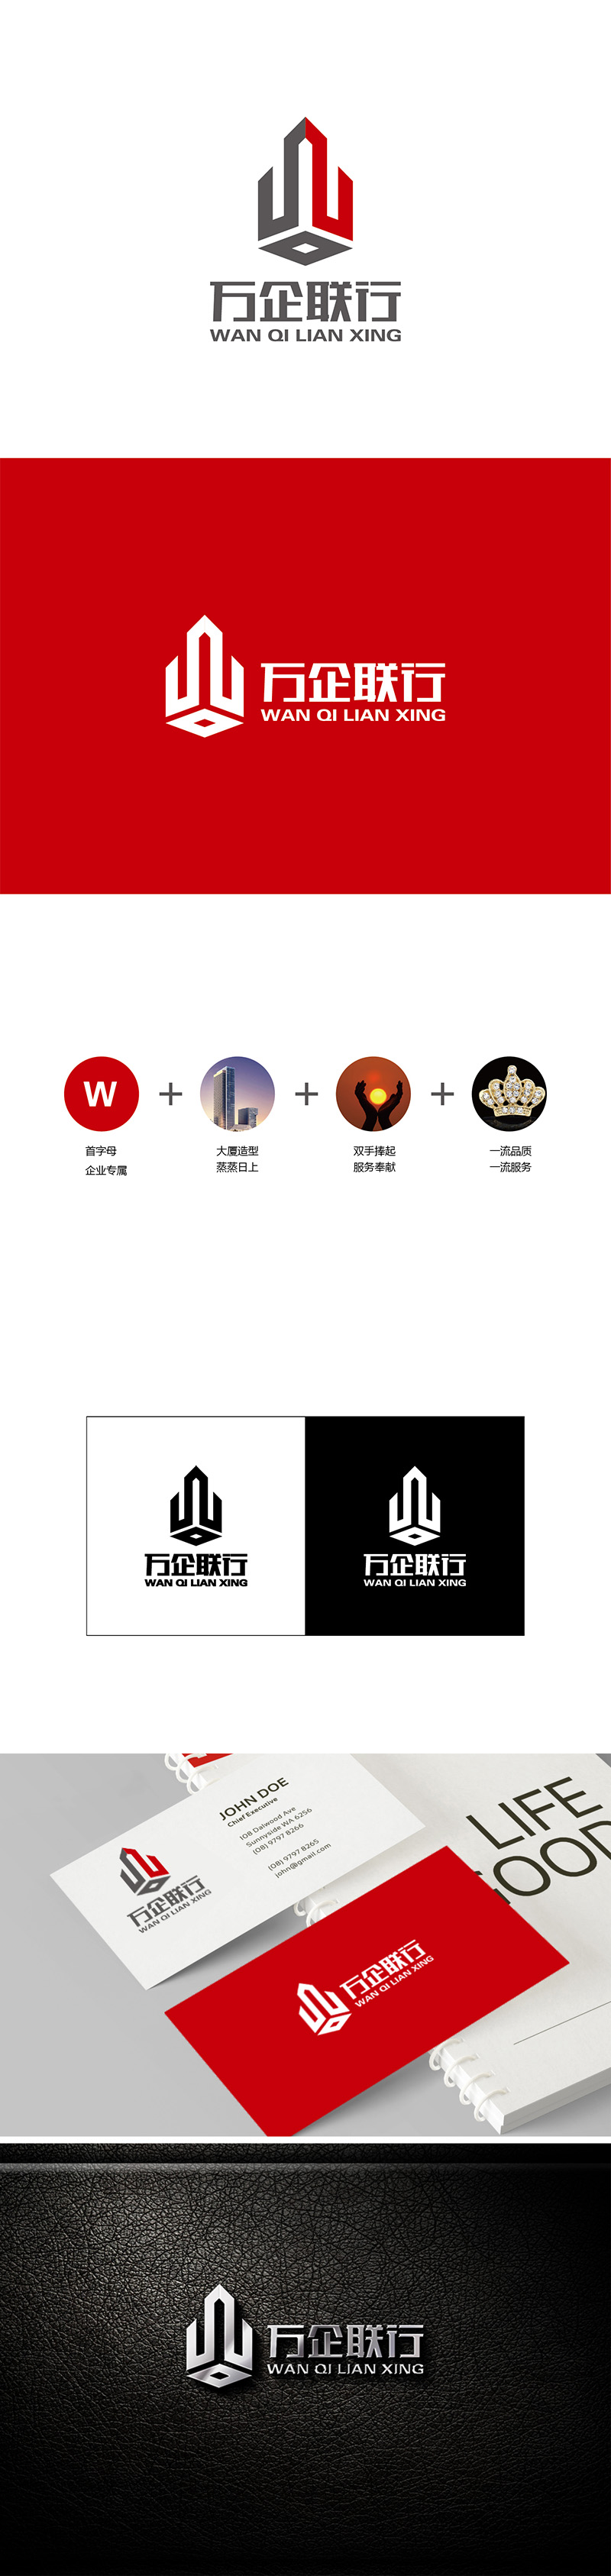 李冬冬的万企联行物业服务有限公司logo设计